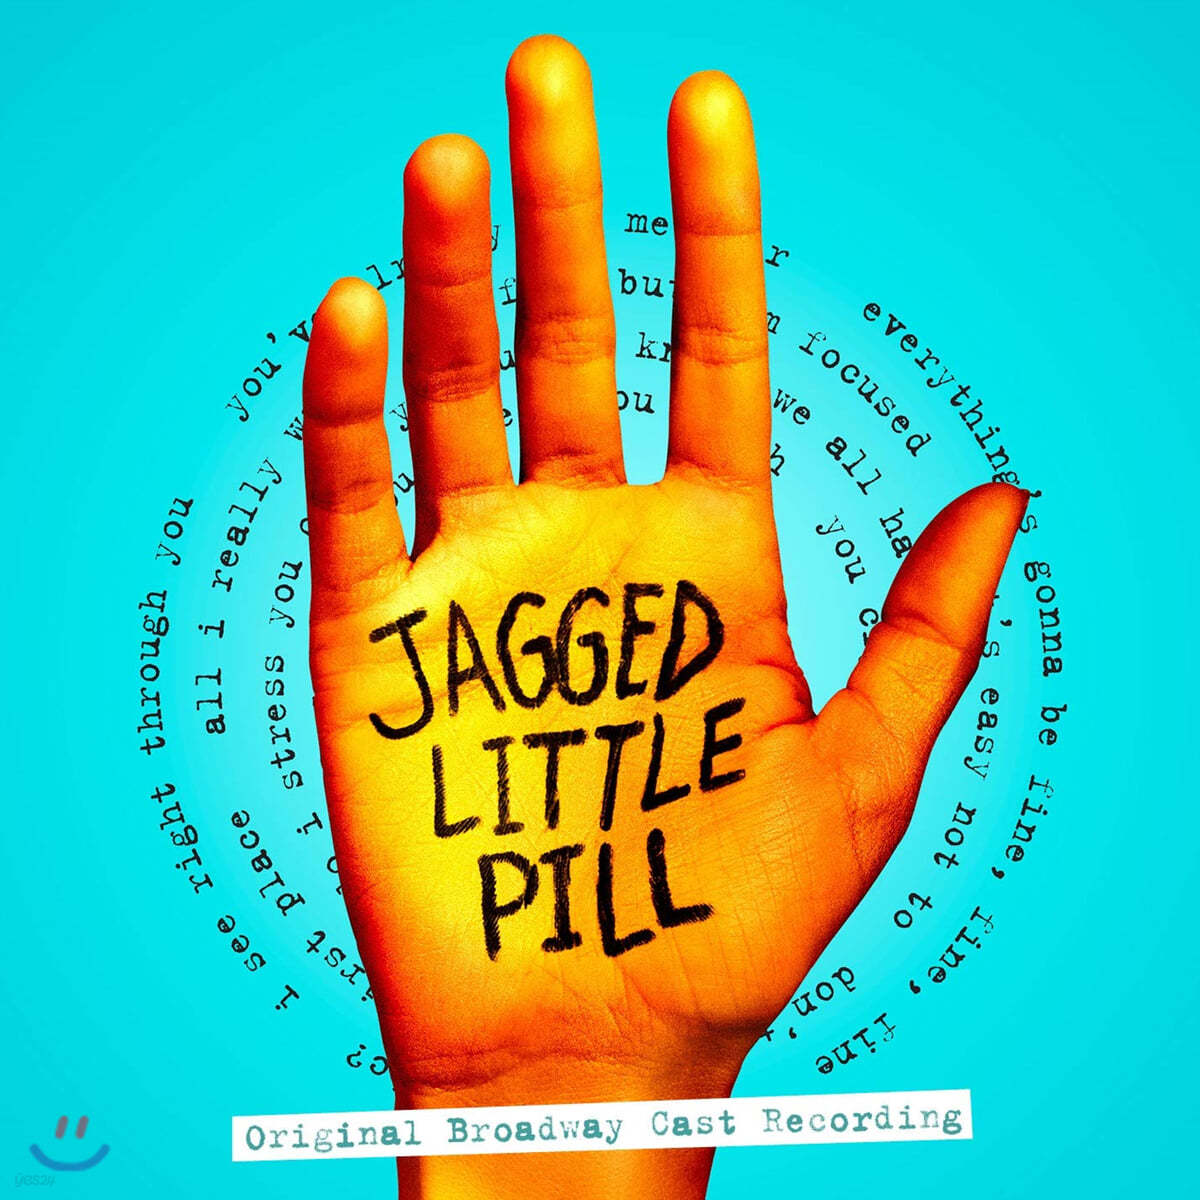 재기드 리틀 필 뮤지컬 음악 (Jagged Little Pill OST)